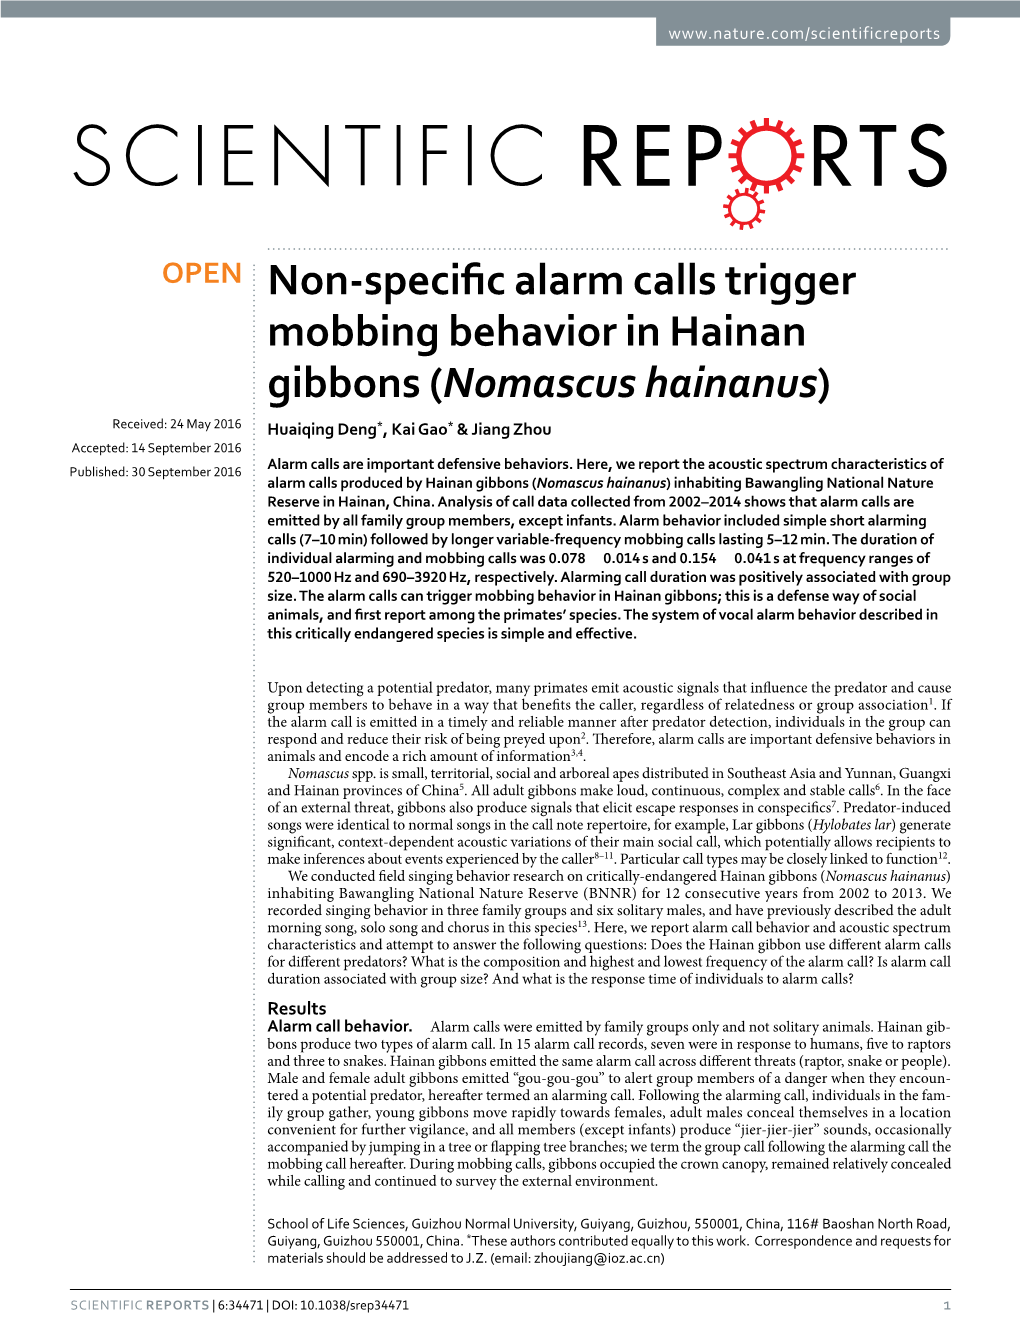 Non-Specific Alarm Calls Trigger Mobbing Behavior in Hainan Gibbons